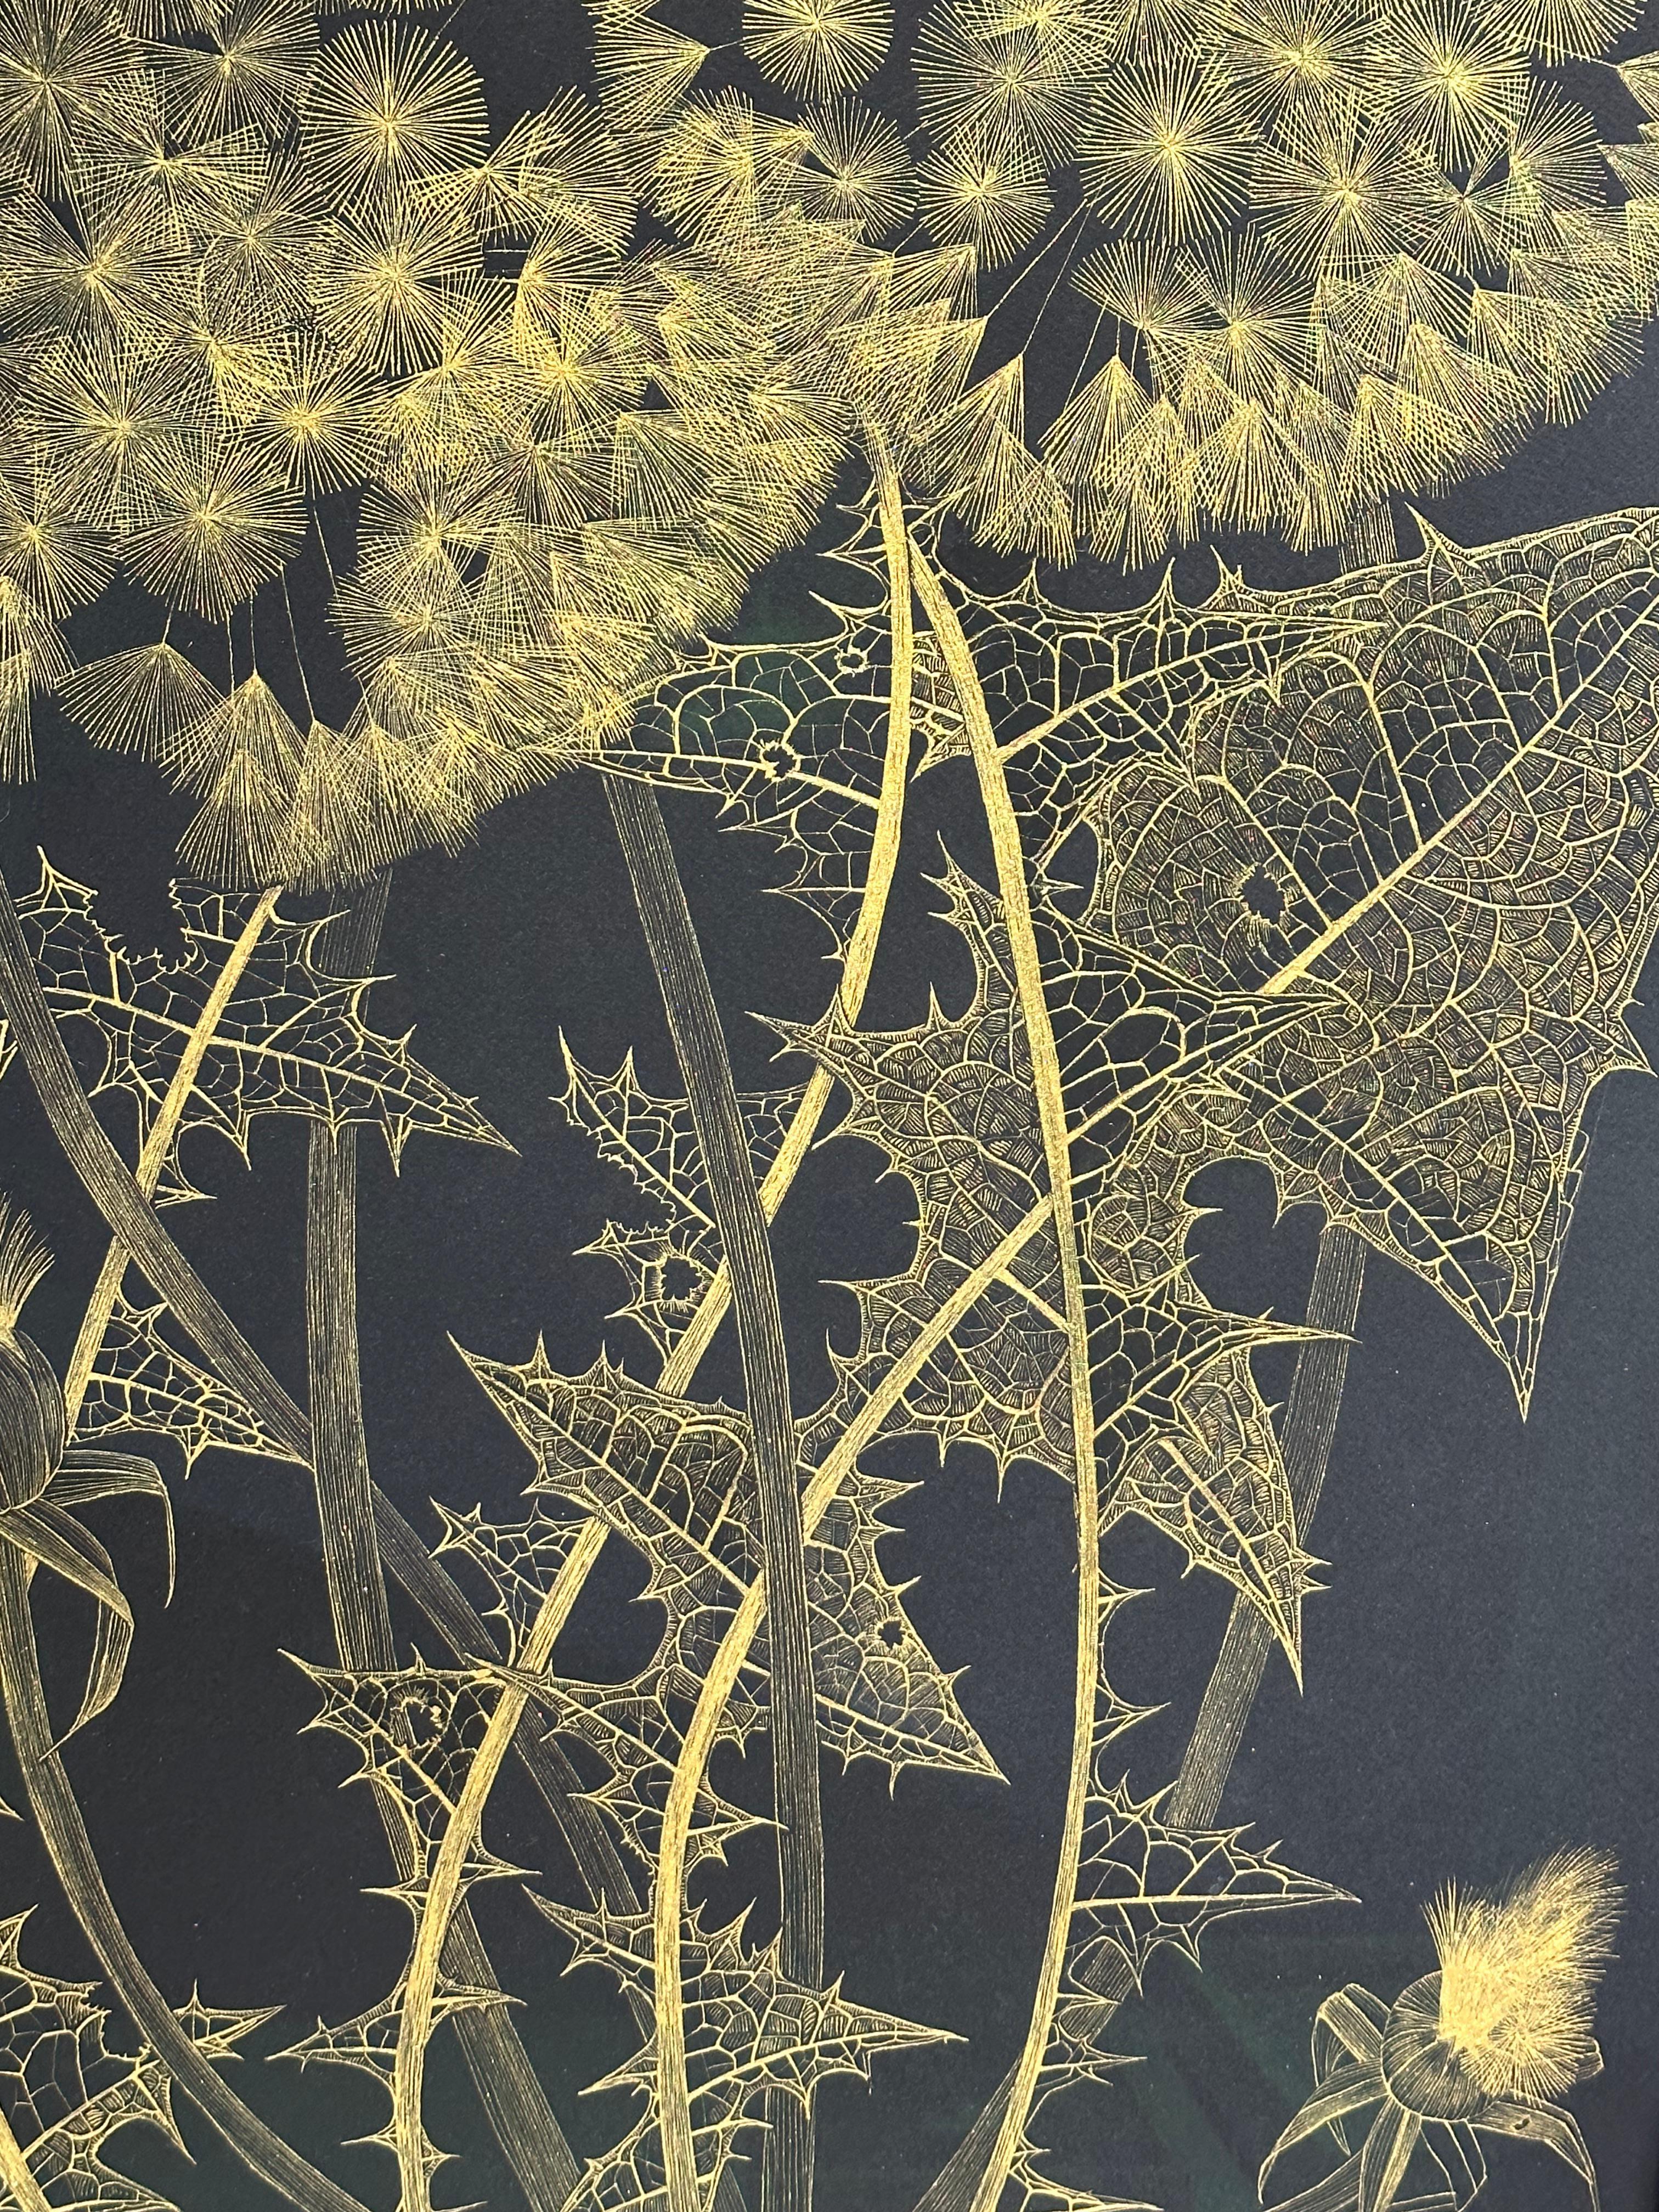 Große Löwenzahn Sechs, Botanische Malerei Schwarz, Gold Blumen, Blätter, Stem 3